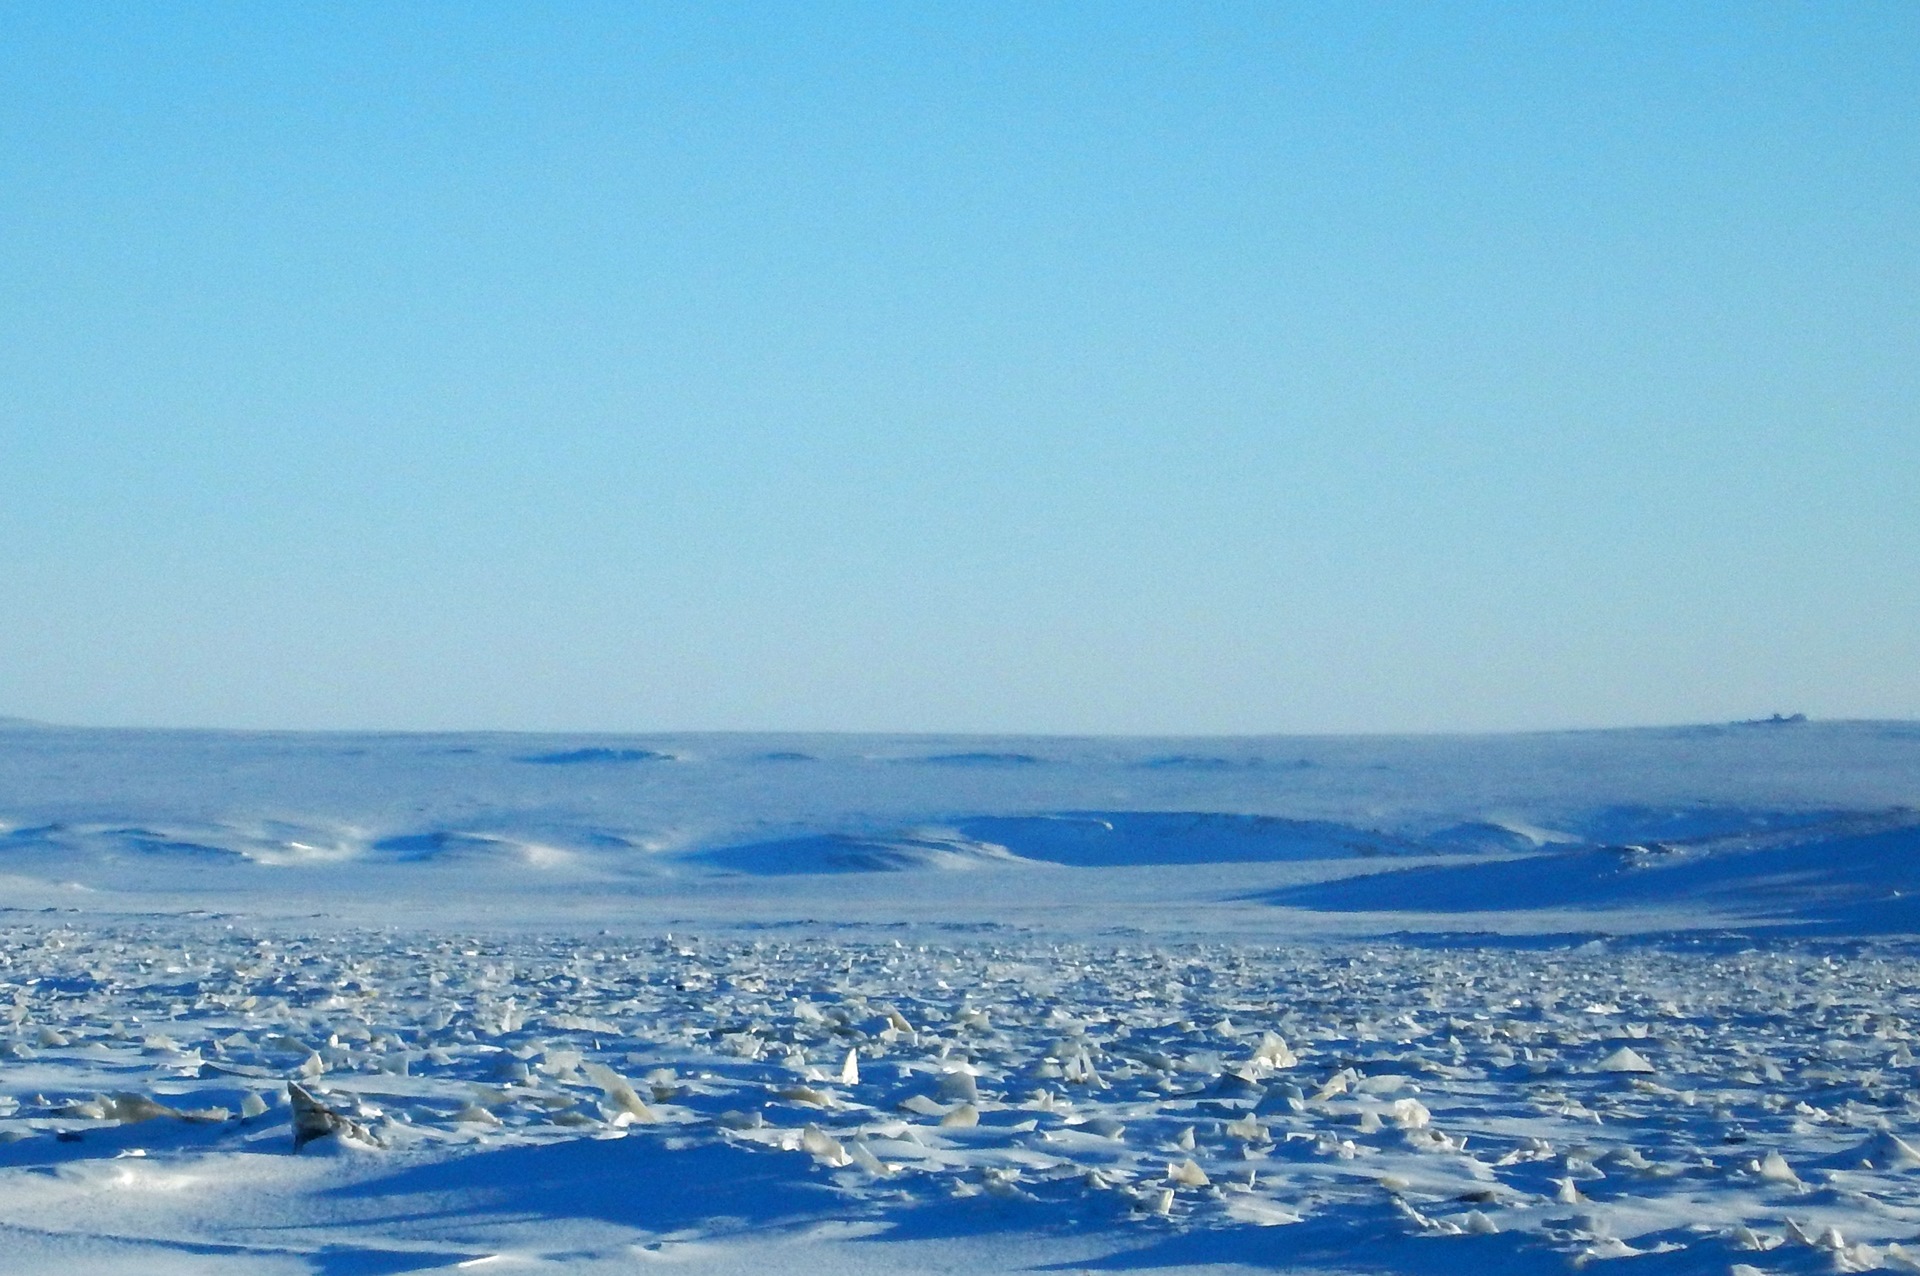 Остров челюскин. Таймыр мыс Челюскин. Полуостров Таймыр мыс Челюскин. Полярная станция мыс Челюскин. Большой Арктический заповедник мыс Челюскин.